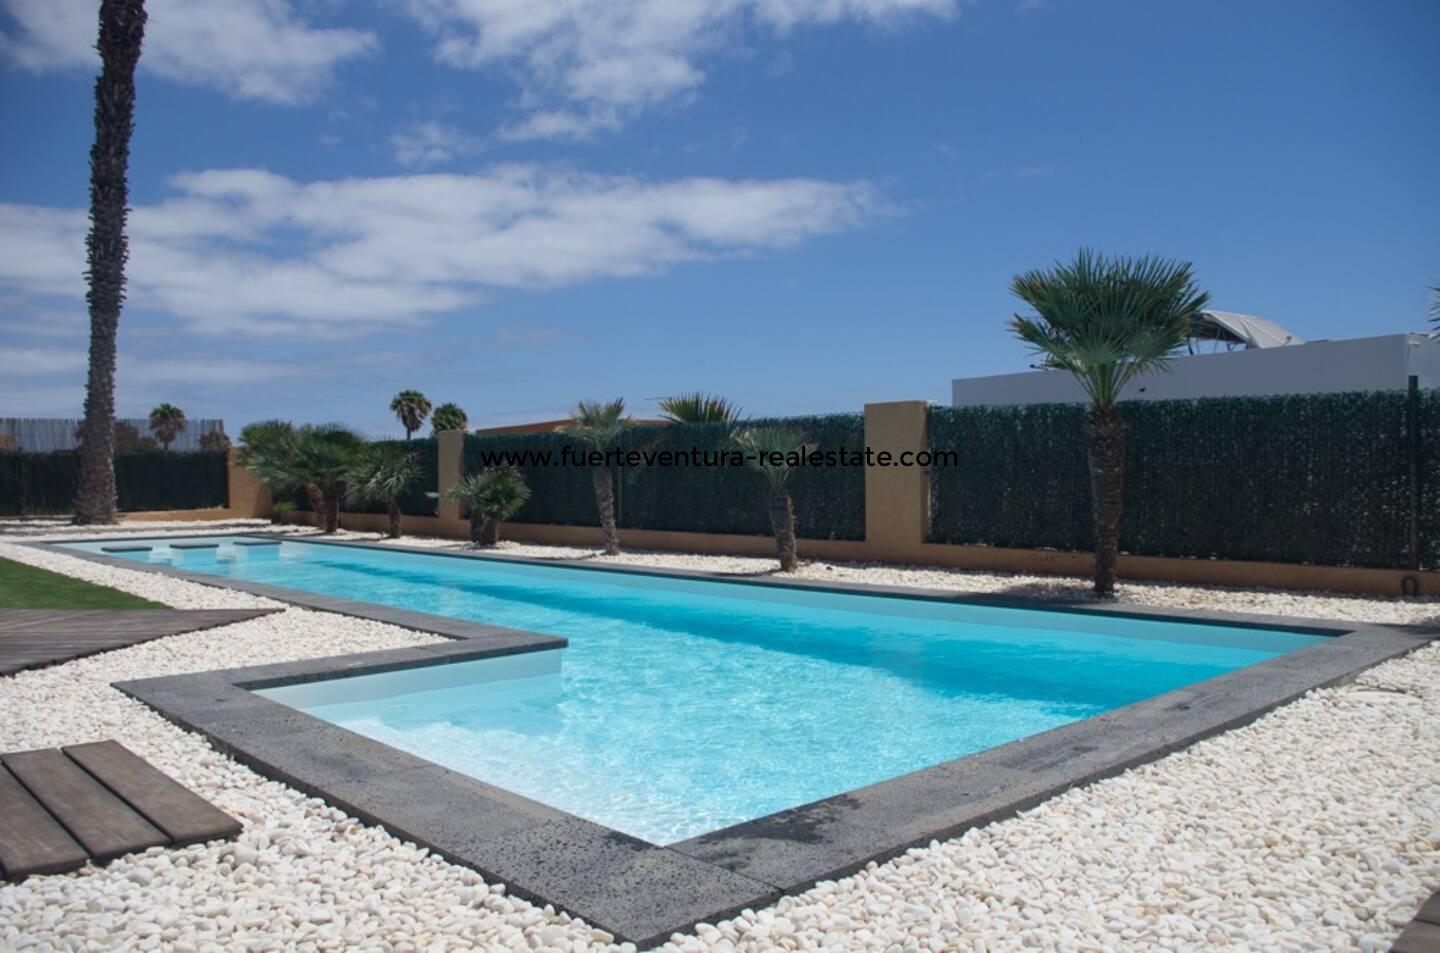  Unique villa with pool on the Golf Las Salinas in Caleta de Fuste